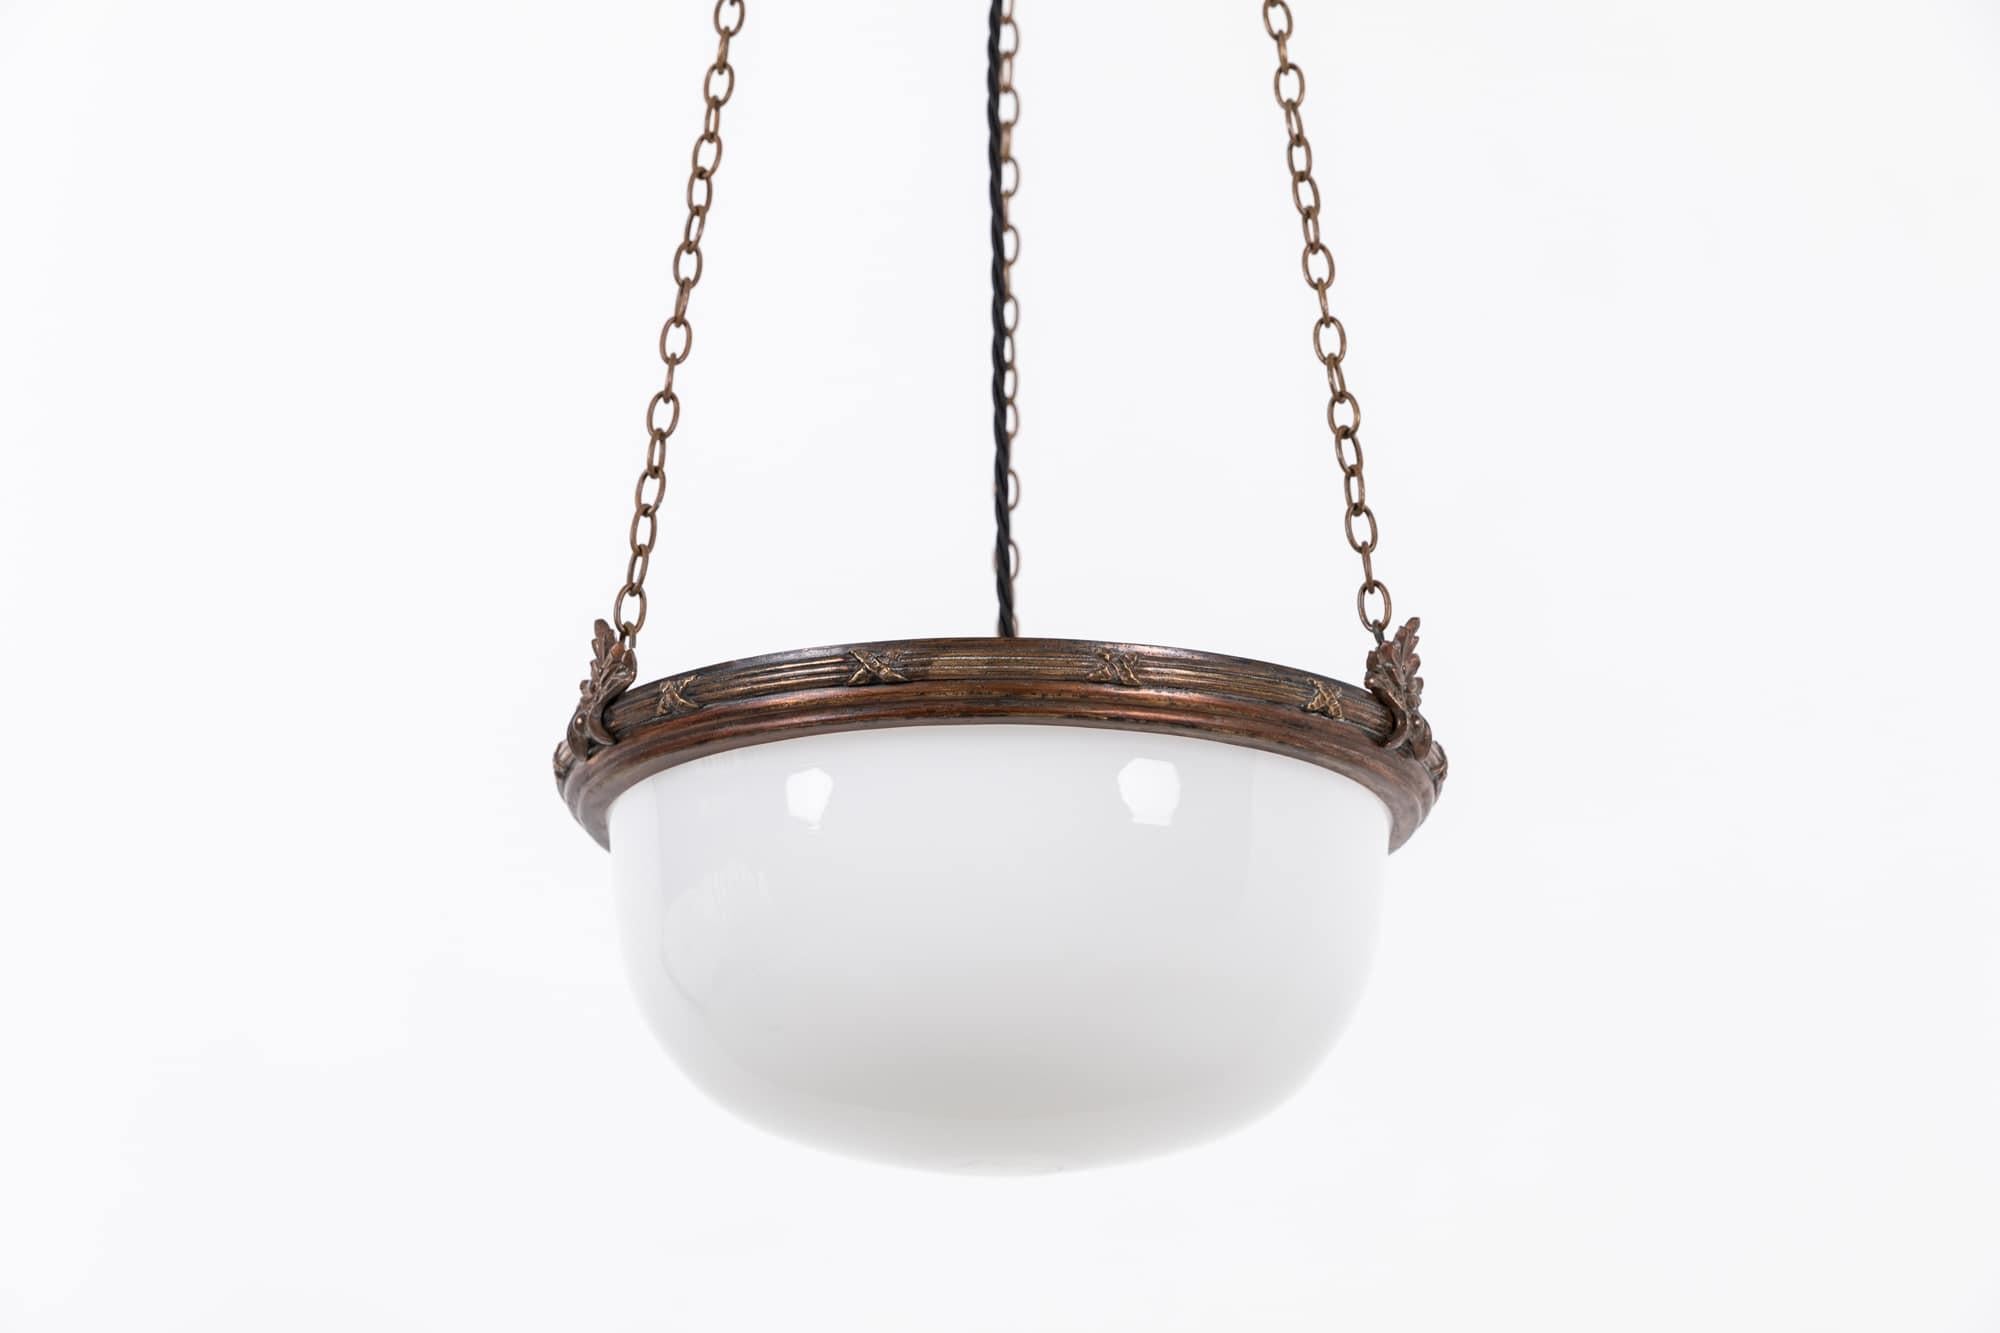 

Une lampe plafonnier à bol en opaline lumineuse incroyablement élégante, fabriquée en Angleterre. C.C.1930.

Bol opale blanc brillant soutenu par un anneau décoratif en laiton d'origine, une chaîne et un support de fixation au plafond. Les chaînes